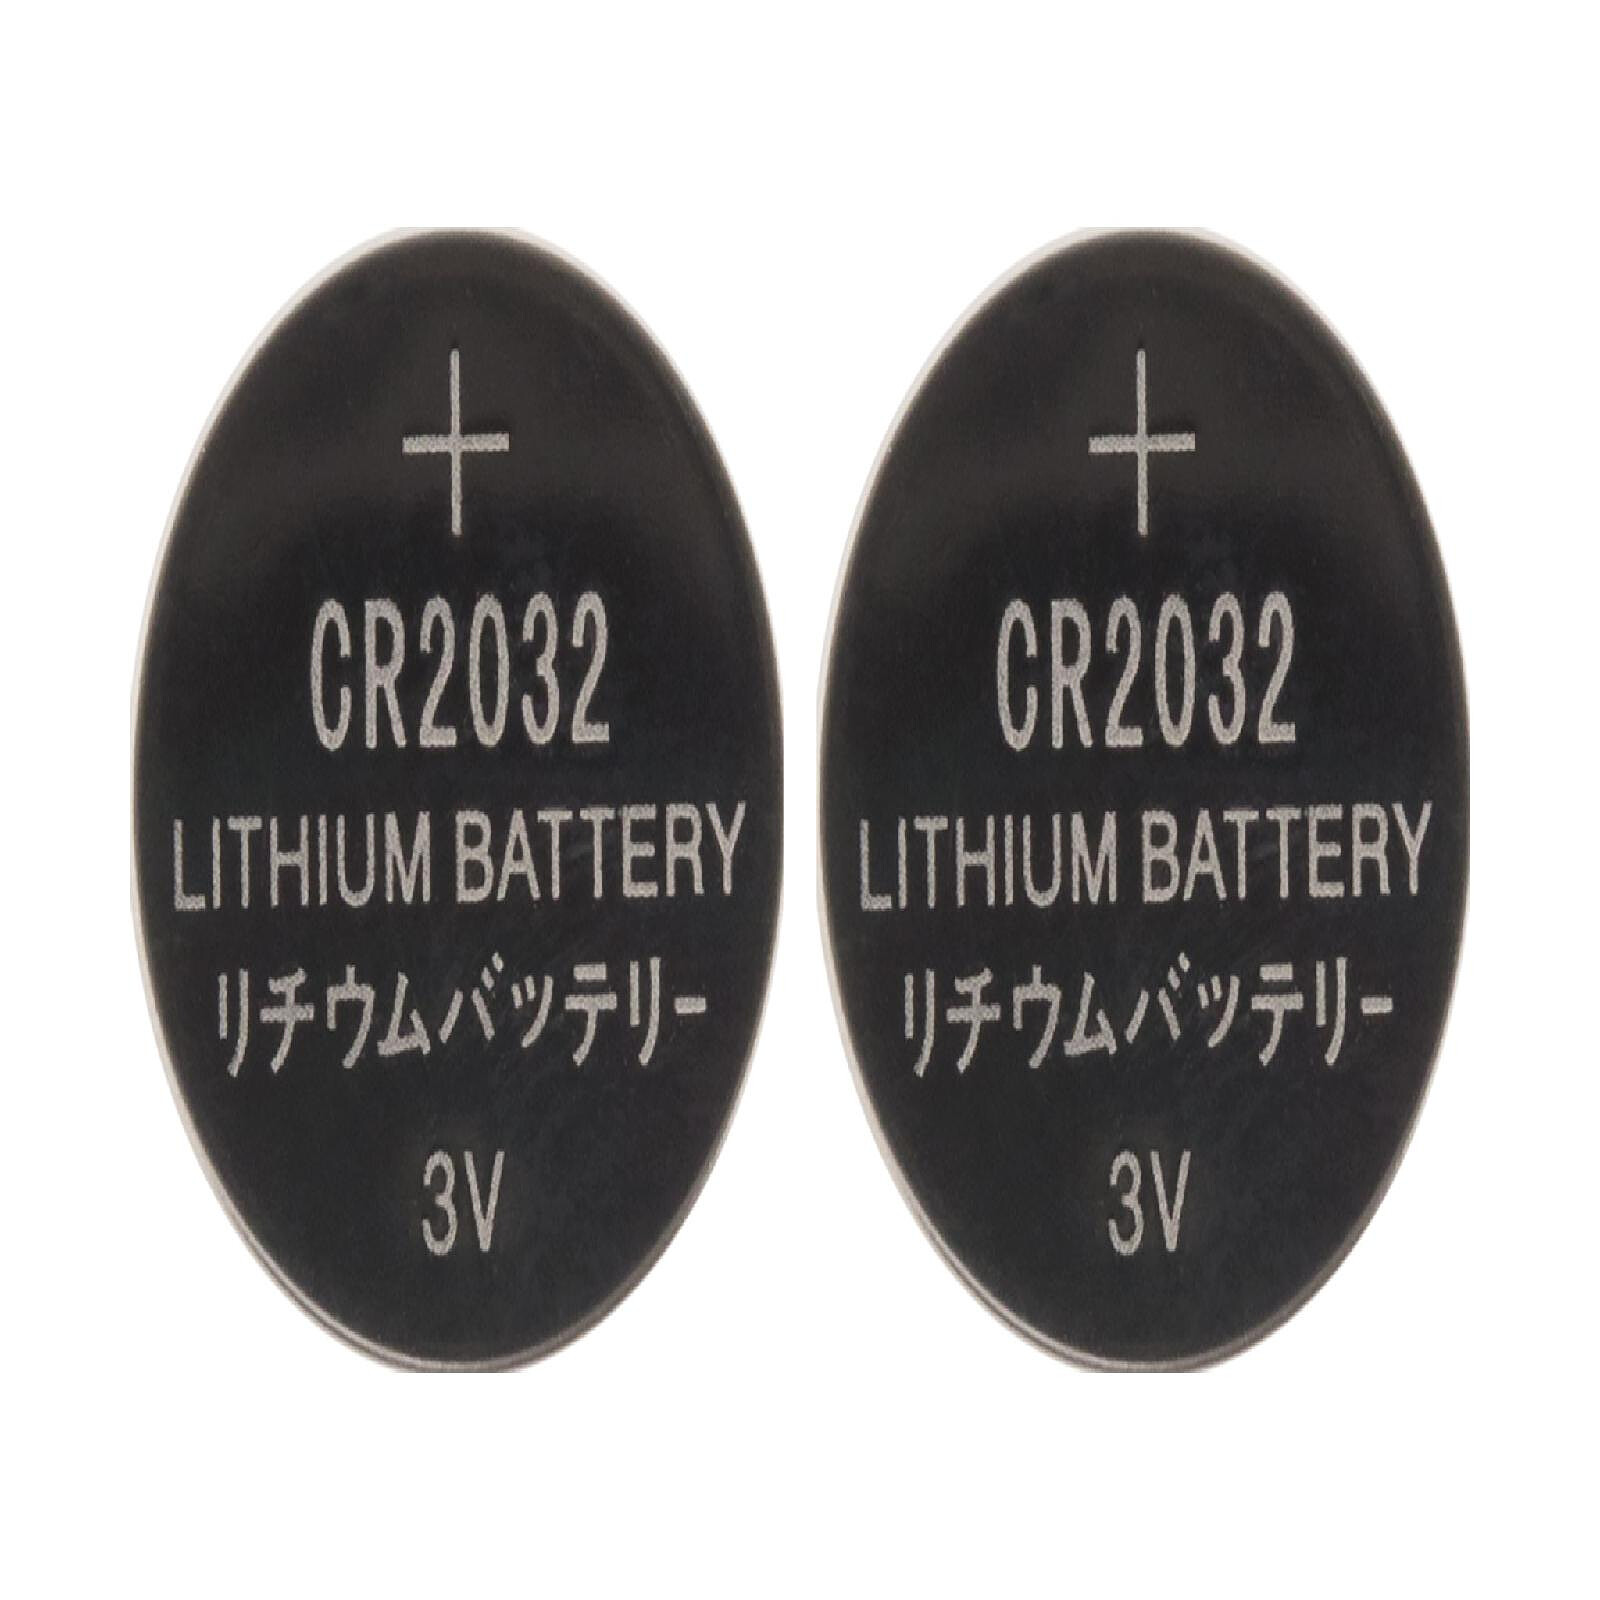 Energizer 2032 Lithium 3V (par 4) - Pile & chargeur - LDLC